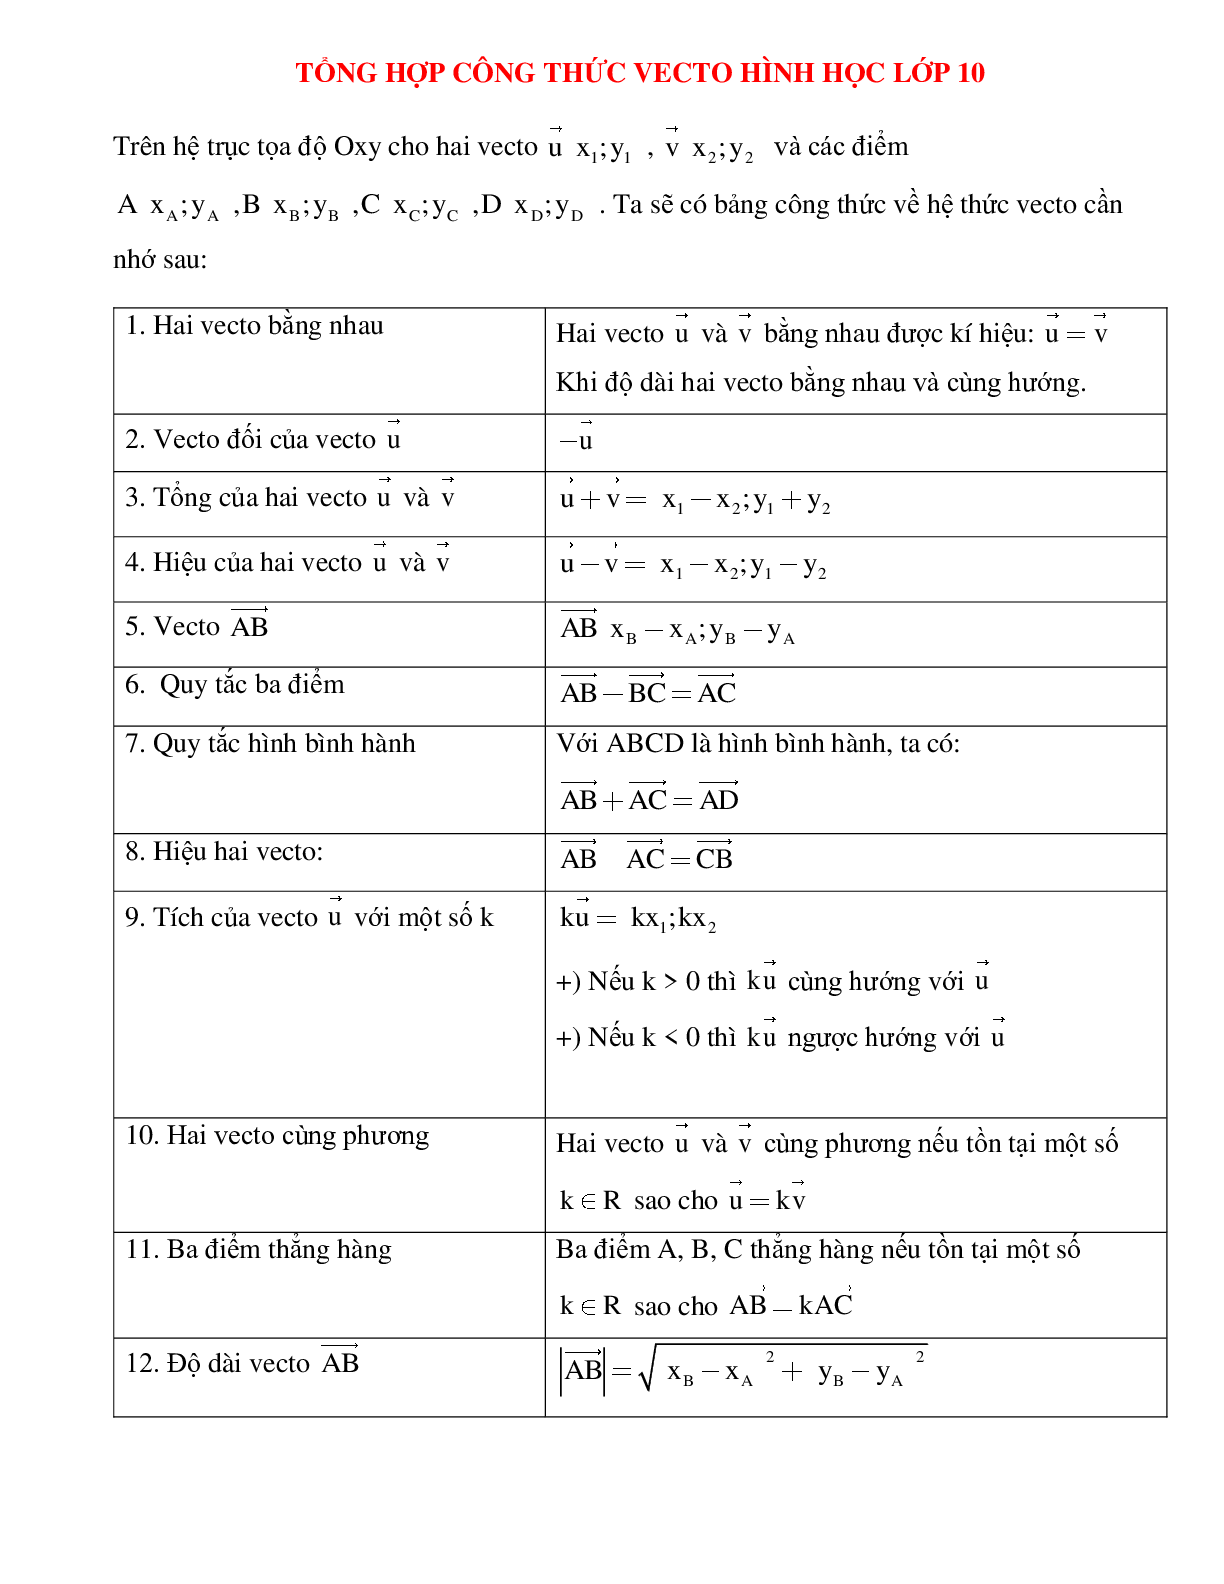 Tổng hợp công thức vecto hình học lớp 10 (trang 1)